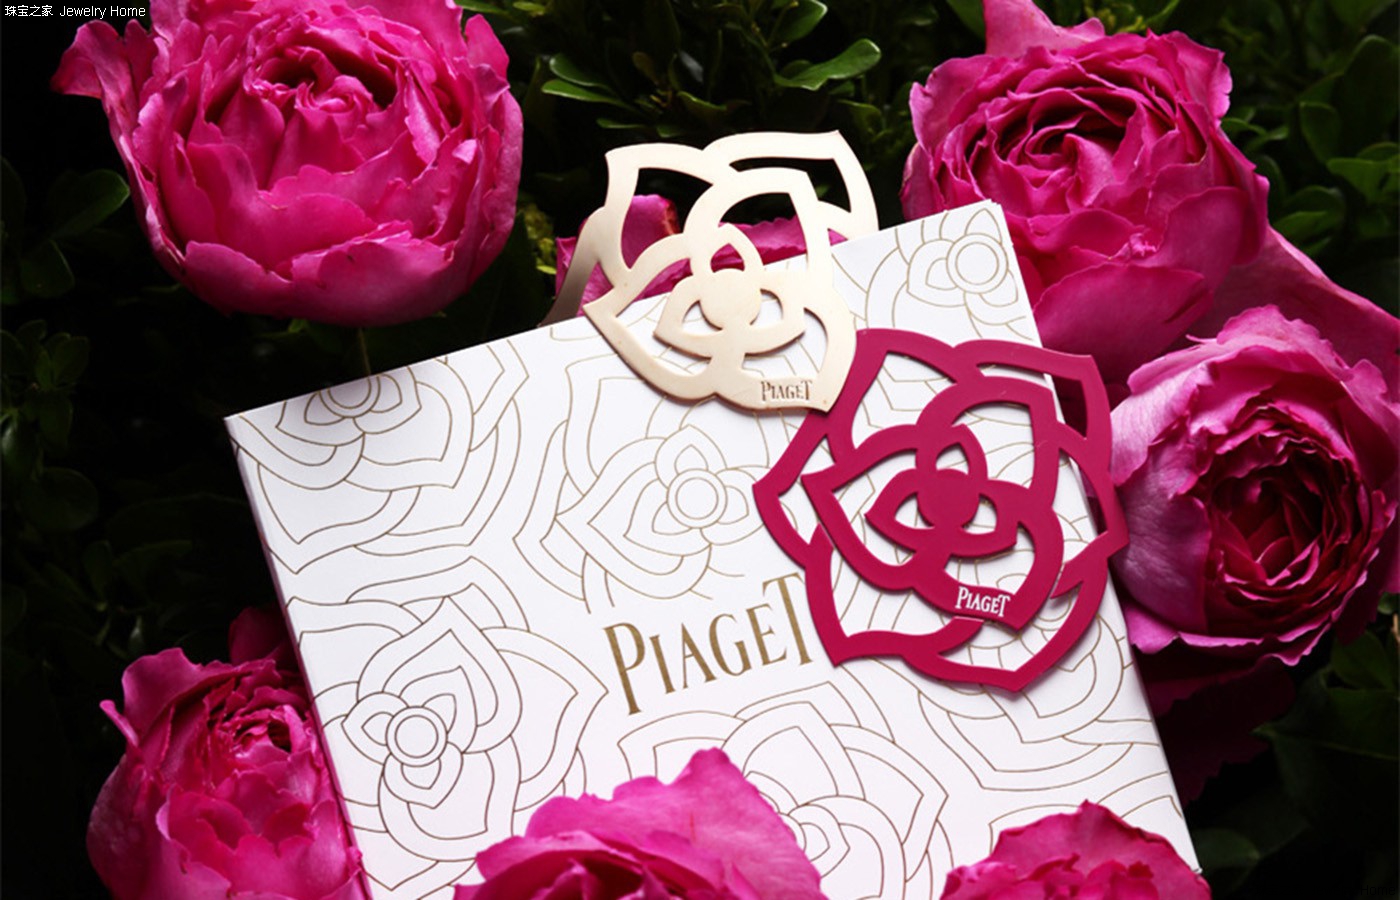 镂空花瓣是轻抚肌肤留下的珍贵烙印——Piaget 玫瑰戒指